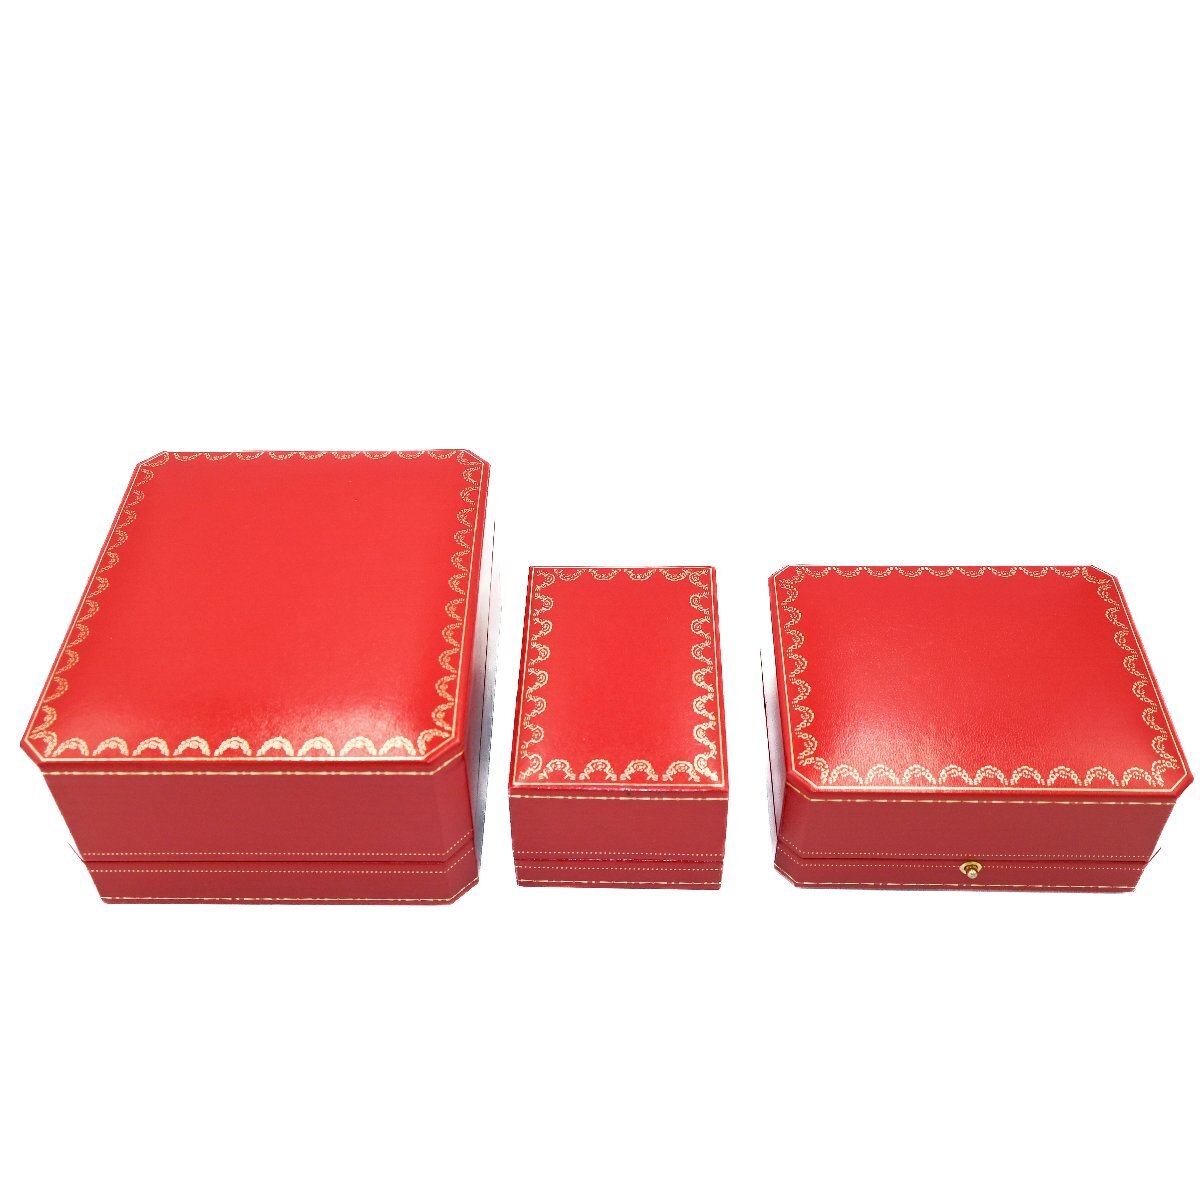 1 иен работа хорошая вещь Cartier CASE Cartier кейс суммировать 7 позиций комплект для часов пустой коробка и т.п. BOX внутри коробка наружная коробка с футляром сопутствующий товар красный красный 349920240507